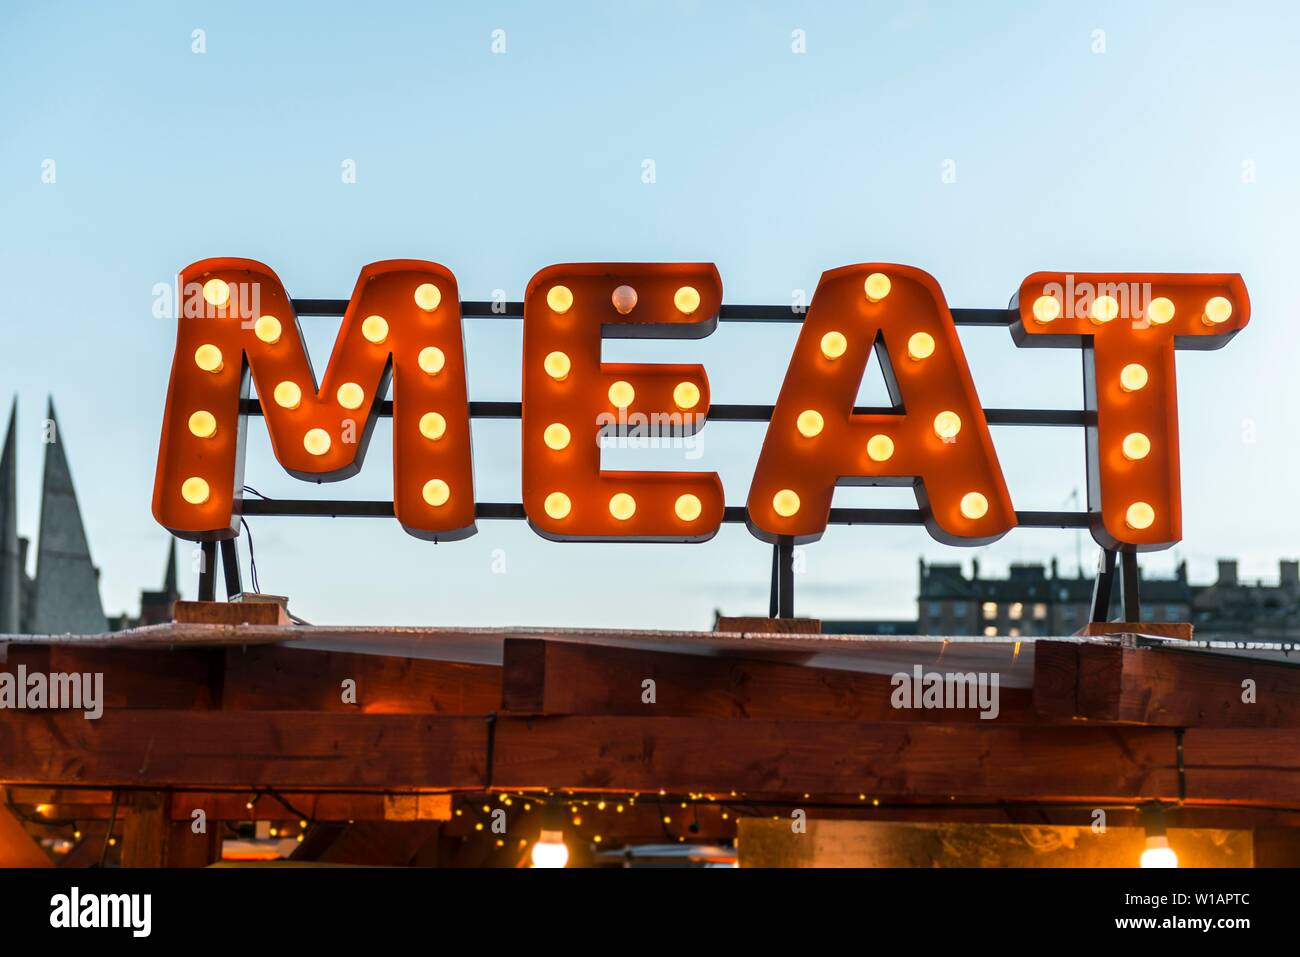 La viande, le marché de Noël d'Édimbourg, Edinburgh, Scotland, Édimbourg, viande, Marché de Noël, viande, viande, viande, viande, viande, viande, viande, viande, viande, viande Banque D'Images